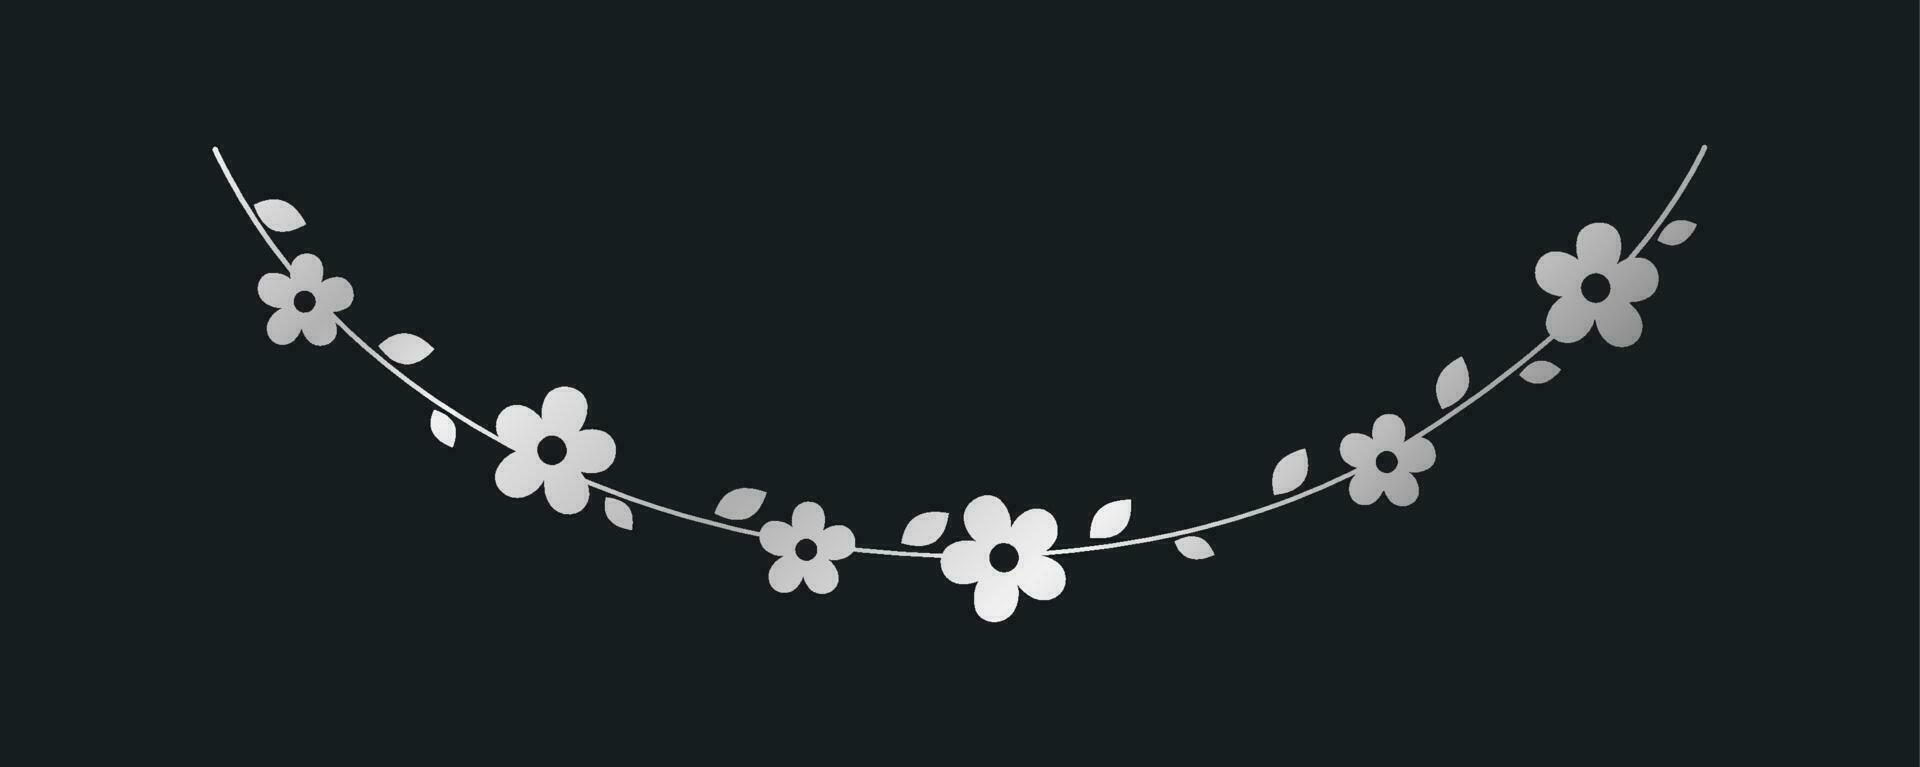 zilver hangende bloem slinger vector illustratie. gemakkelijk goud bloemen botanisch ontwerp elementen voor de lente.